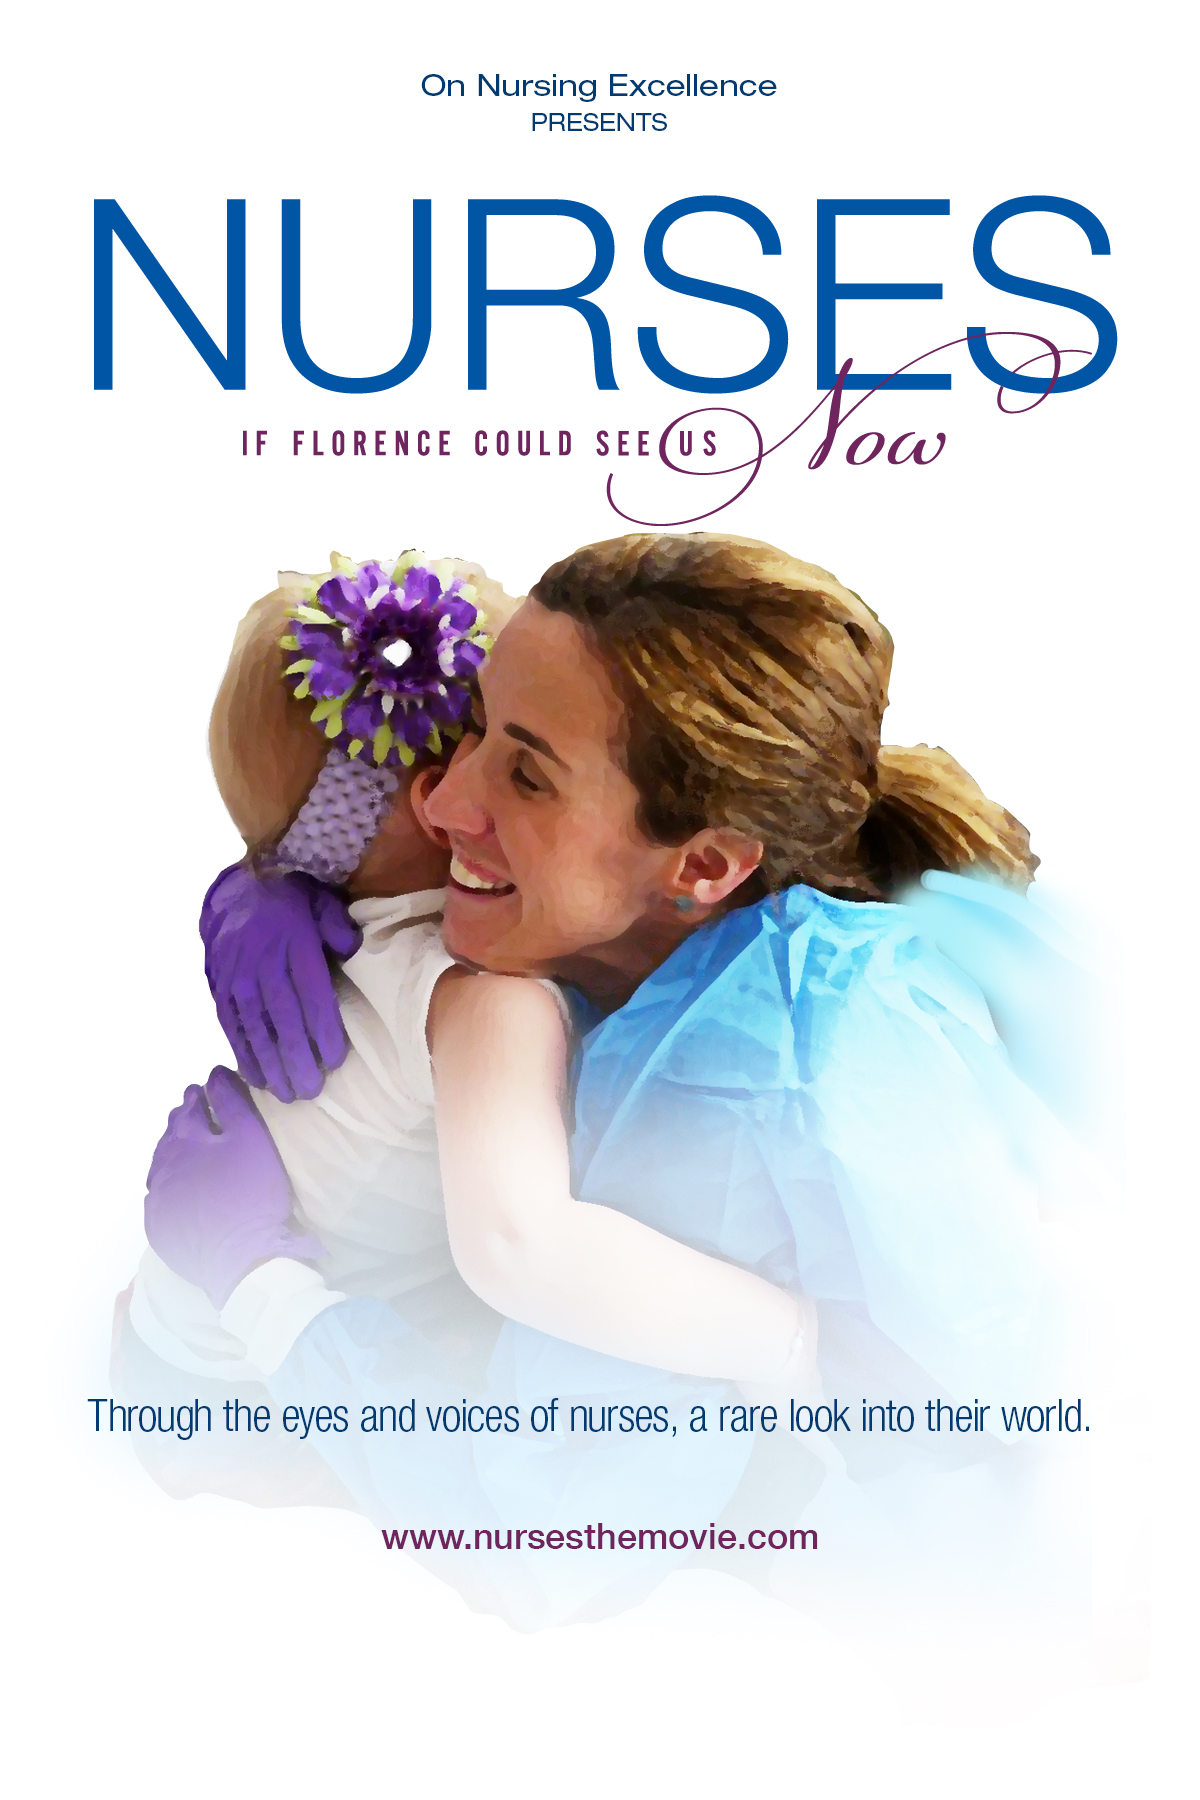 Nurses_Visual_Imagry_08232012_Single